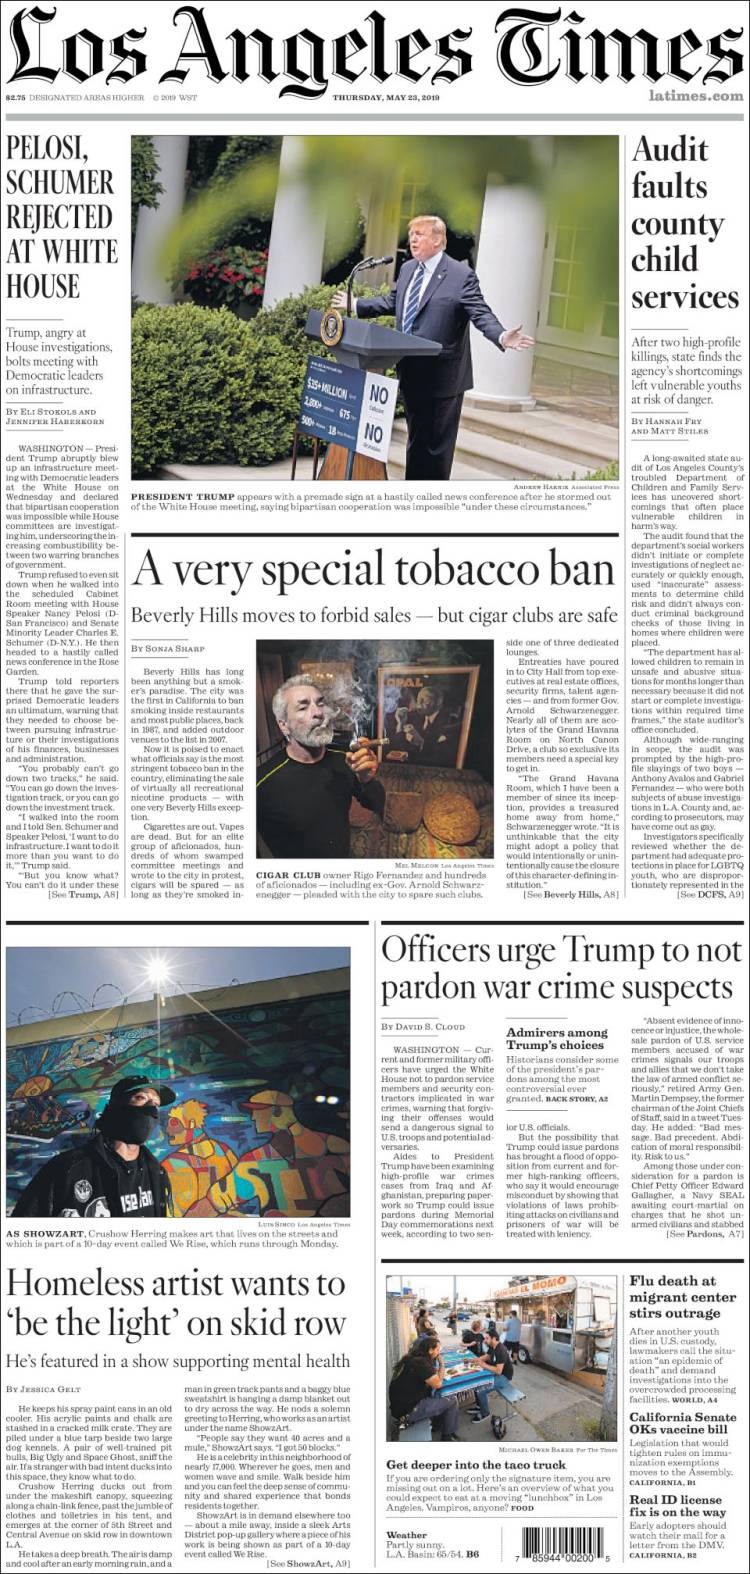 صفحه اول روزنامه لس آنجلس تایمز/پلوسی و شومر در کاخ سفید پذیرفته نشدند